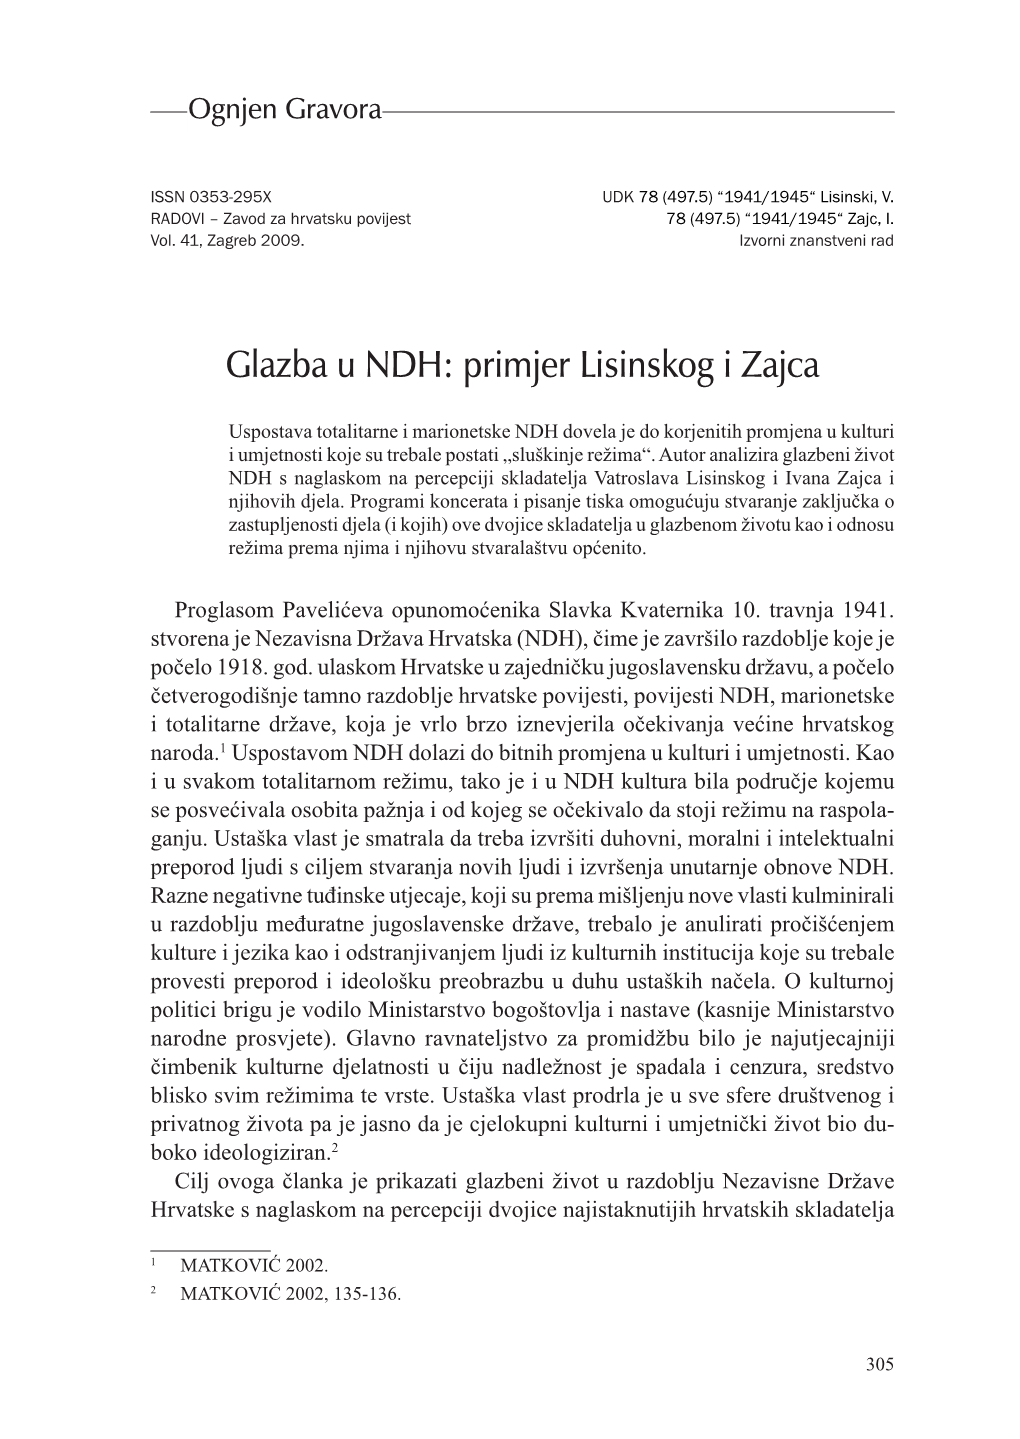 Glazba U NDH: Primjer Lisinskog I Zajca